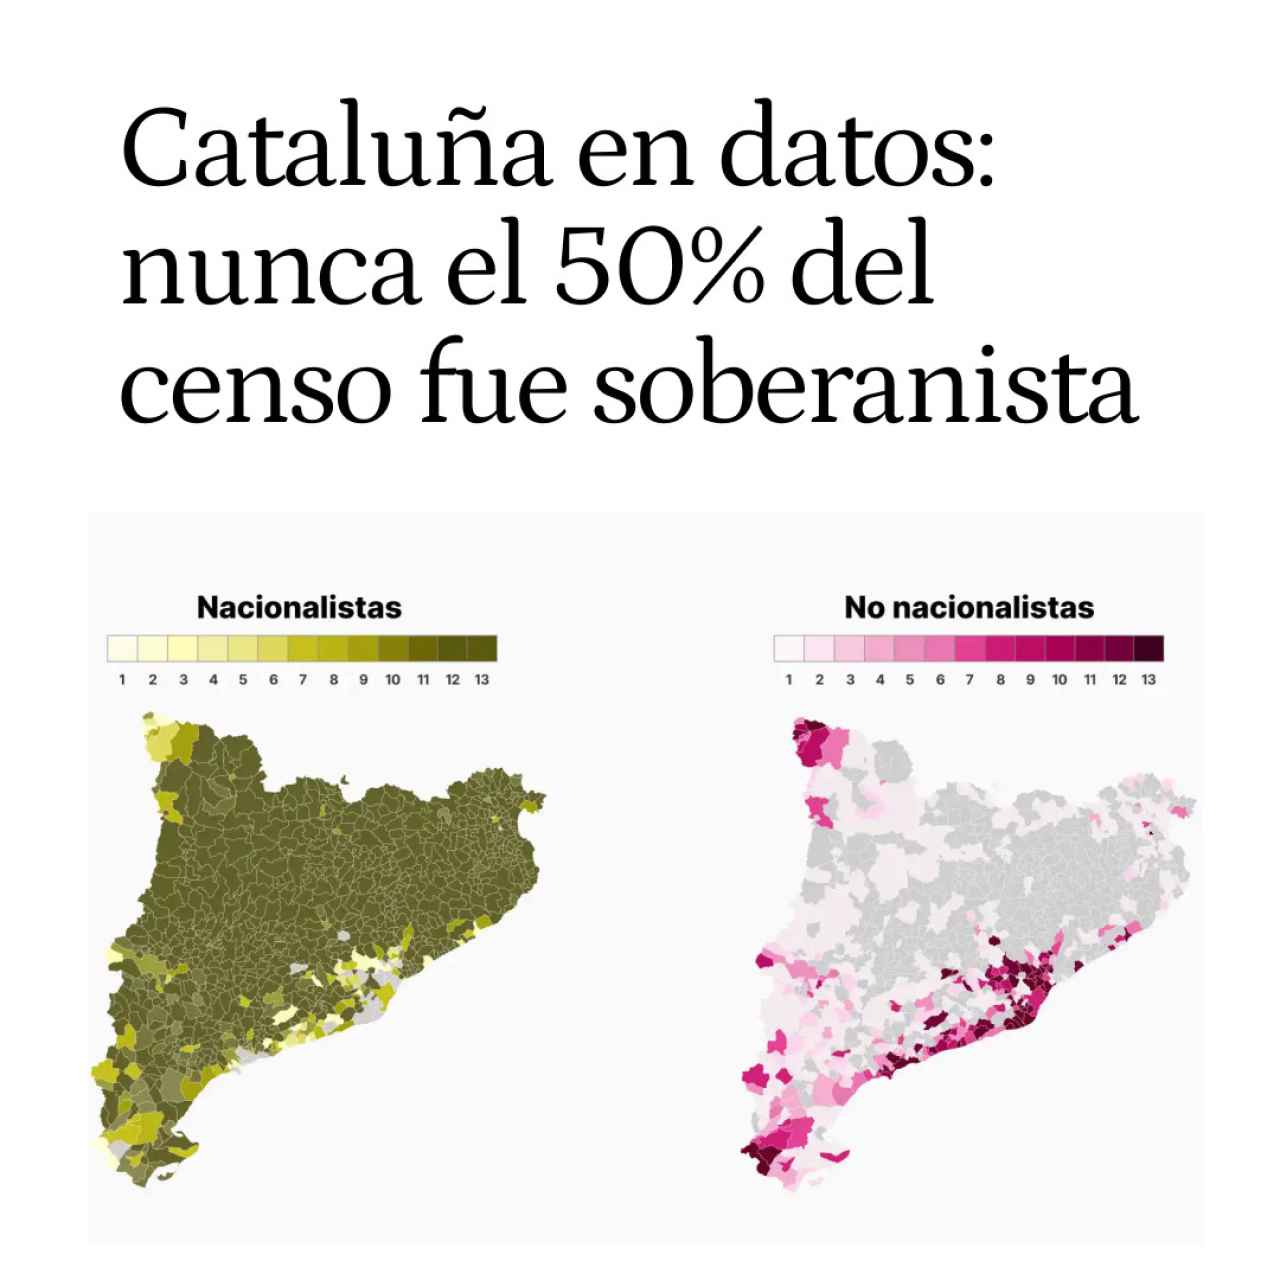 Cataluña en datos: el 50% de los municipios ha sido siempre soberanista, pero no el 50% del censo